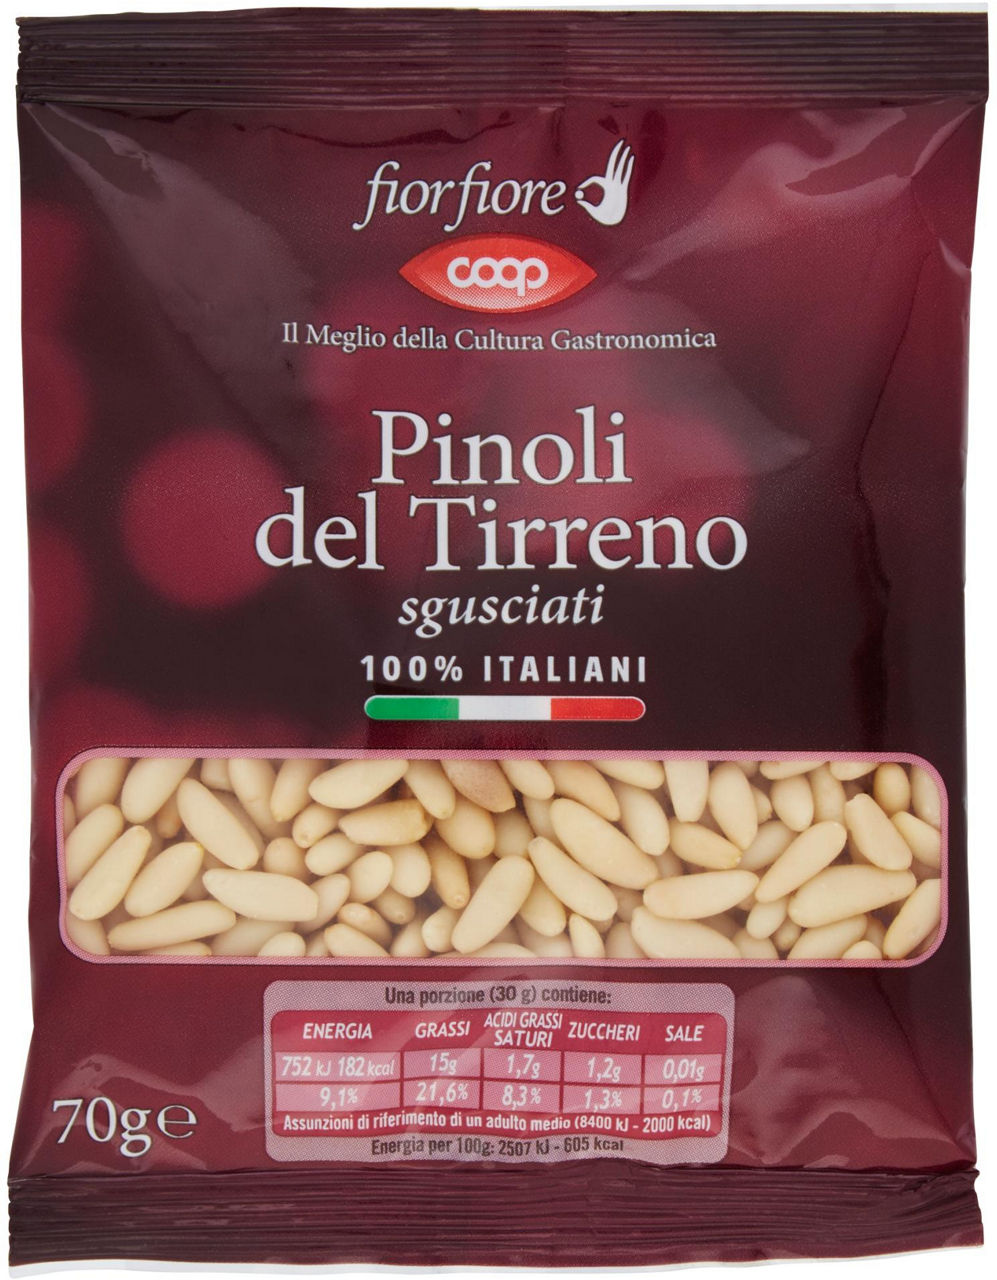 Pinoli del Tirreno sgusciati 100% Italiani Fiorfiore 70 g - 0